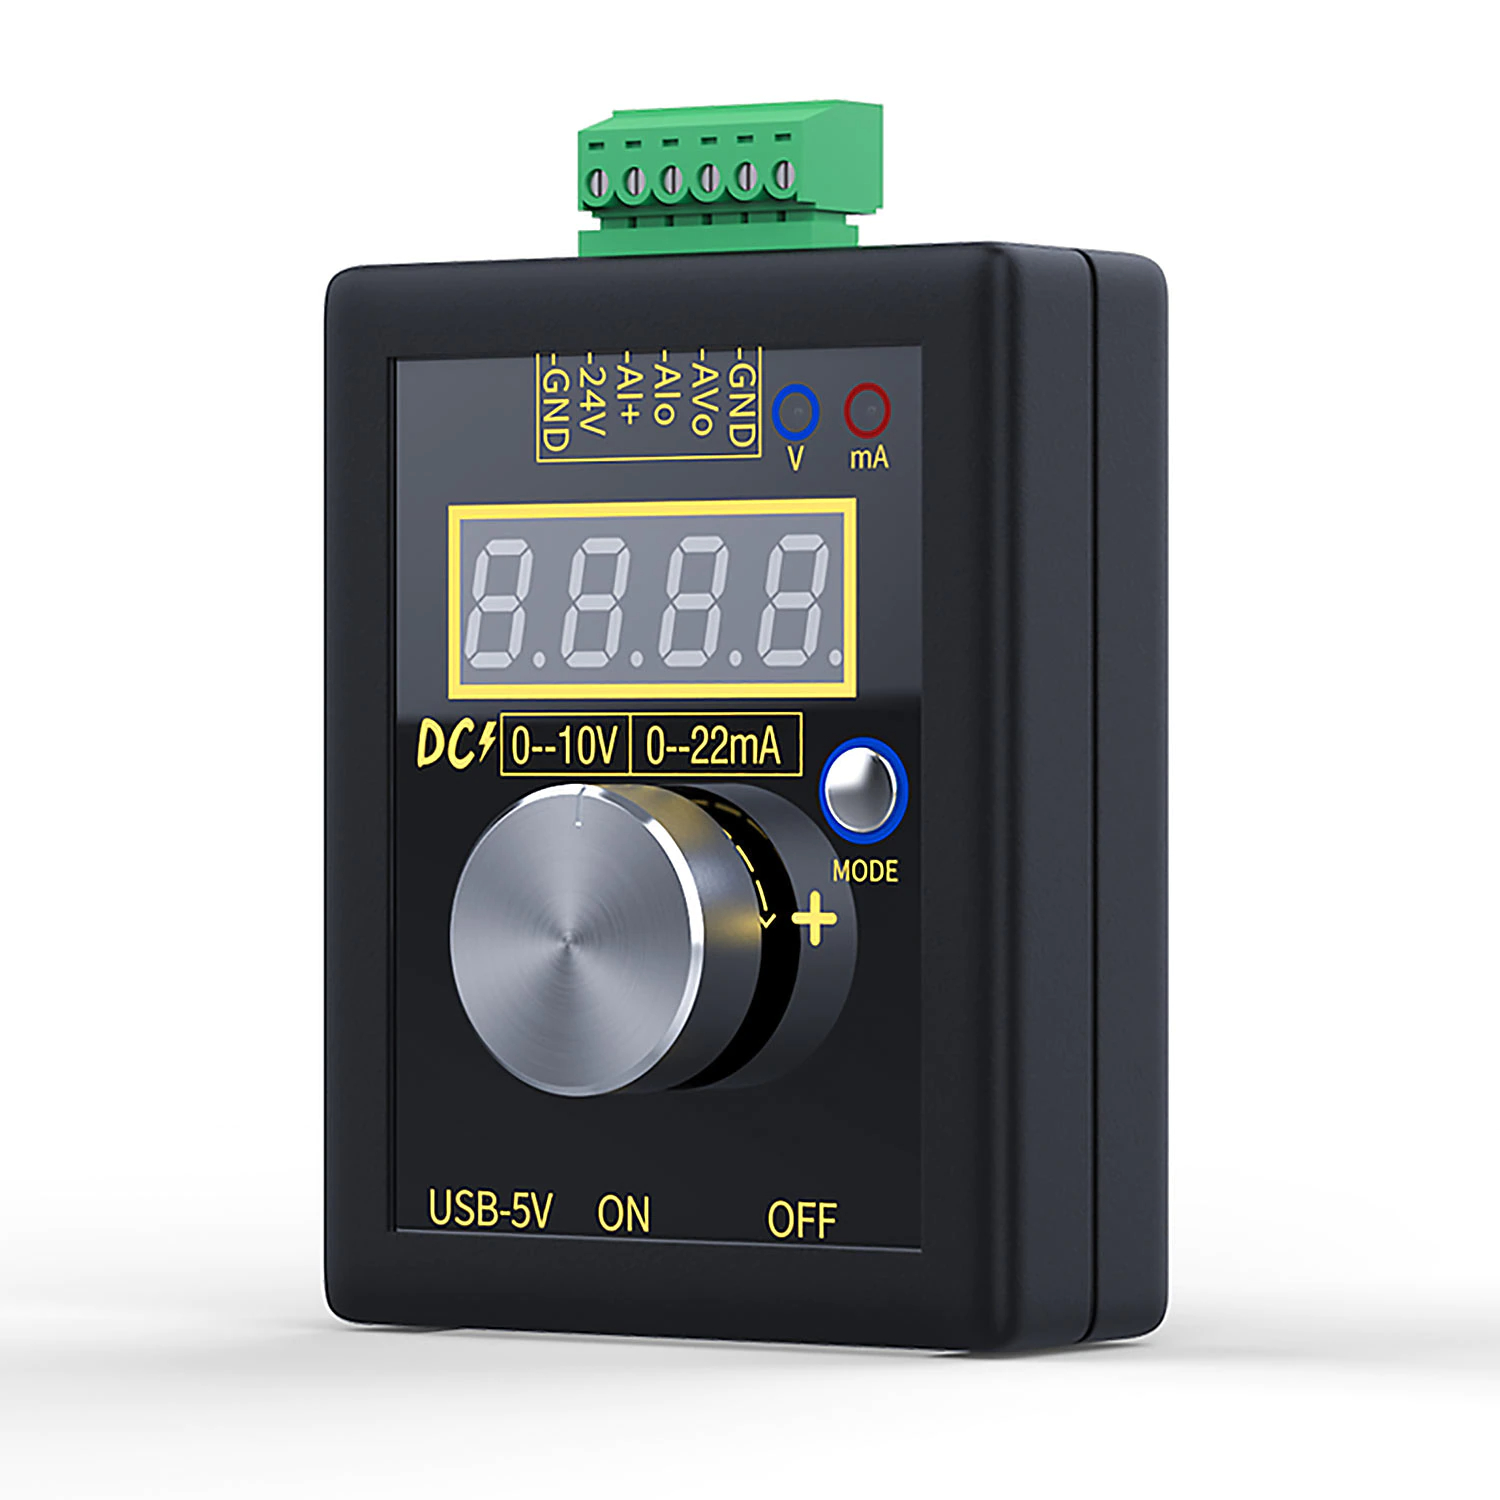 Générateur manuel de consigne analogique sortie 4-20mA compatible HART®  INDEX2-HWT-POT-BCLSO - A puissance 3